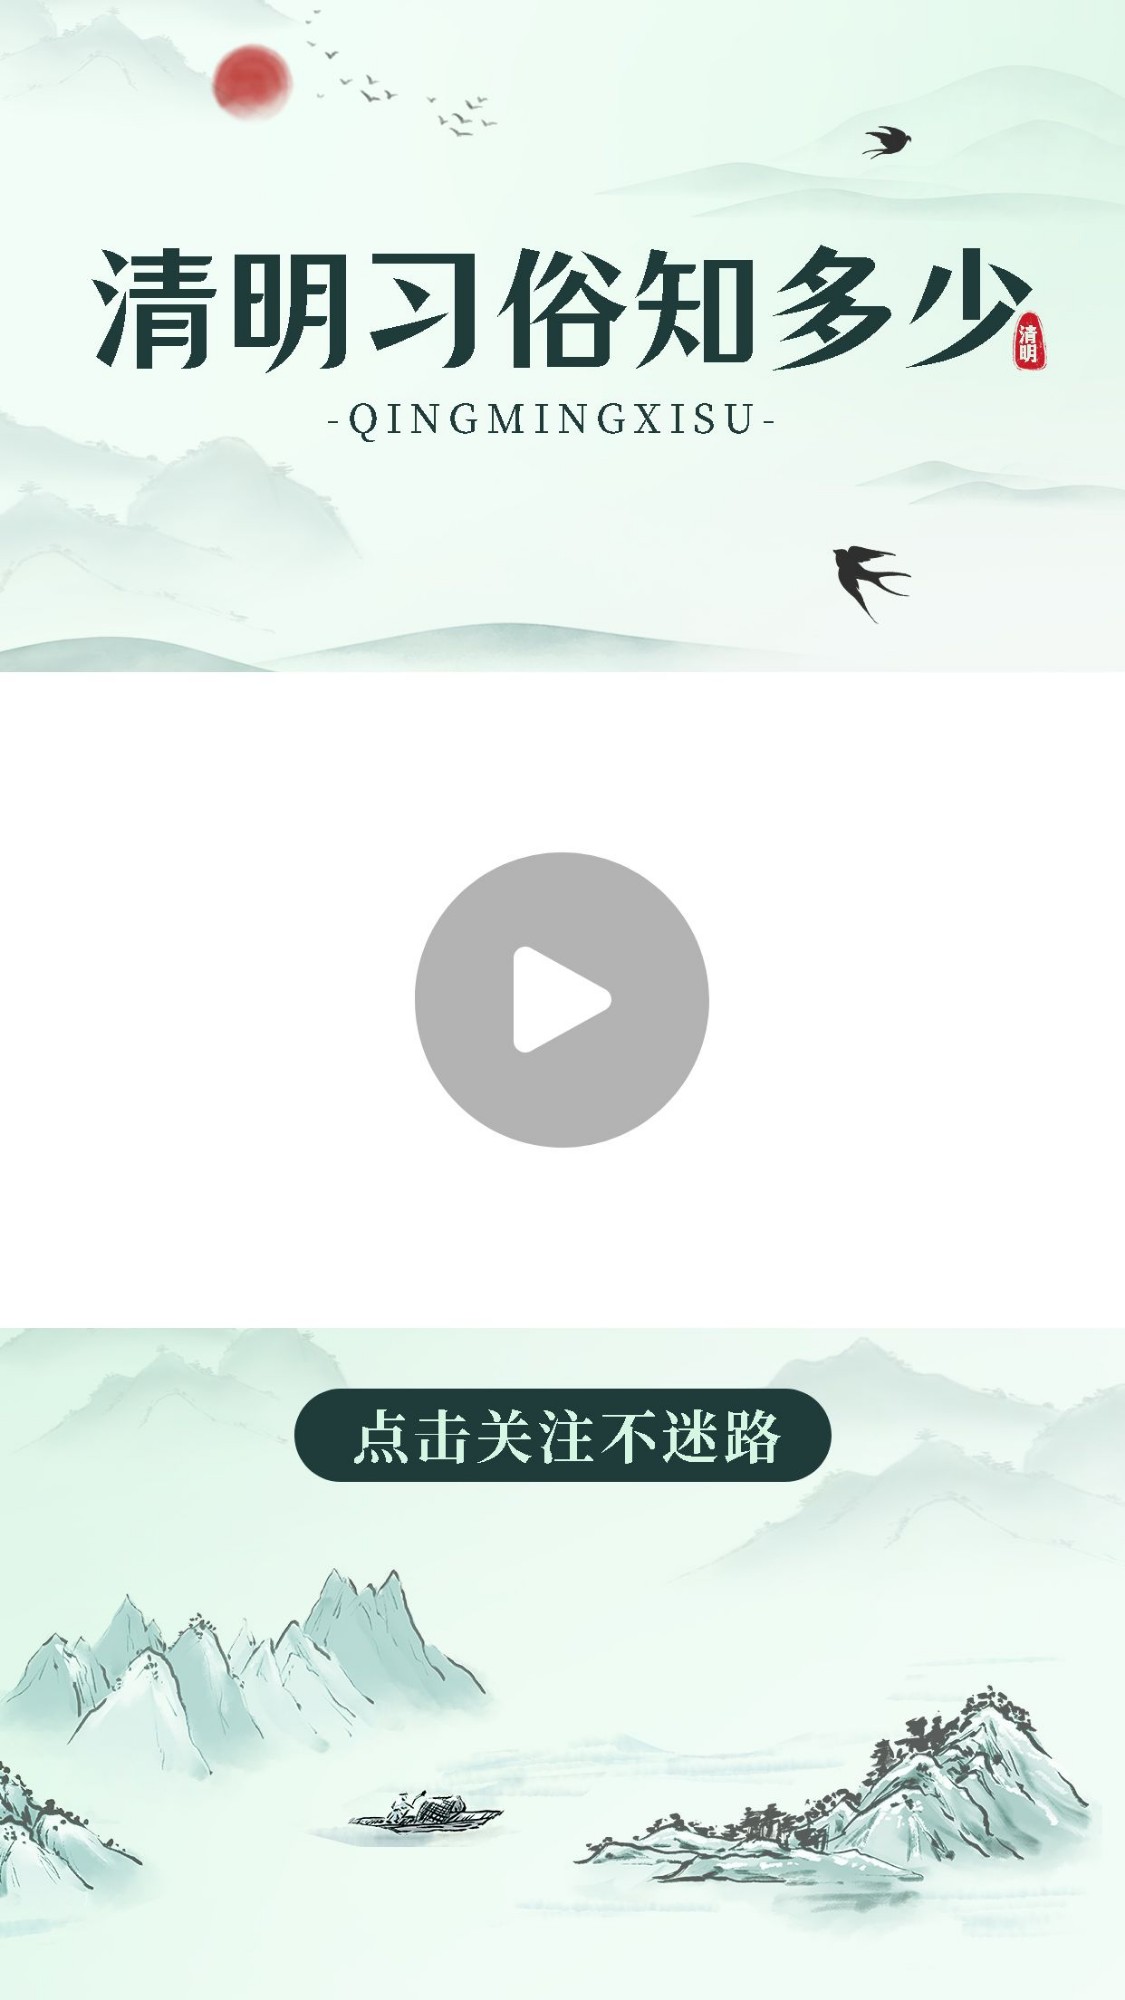 清明节习俗科普宣传视频边框预览效果